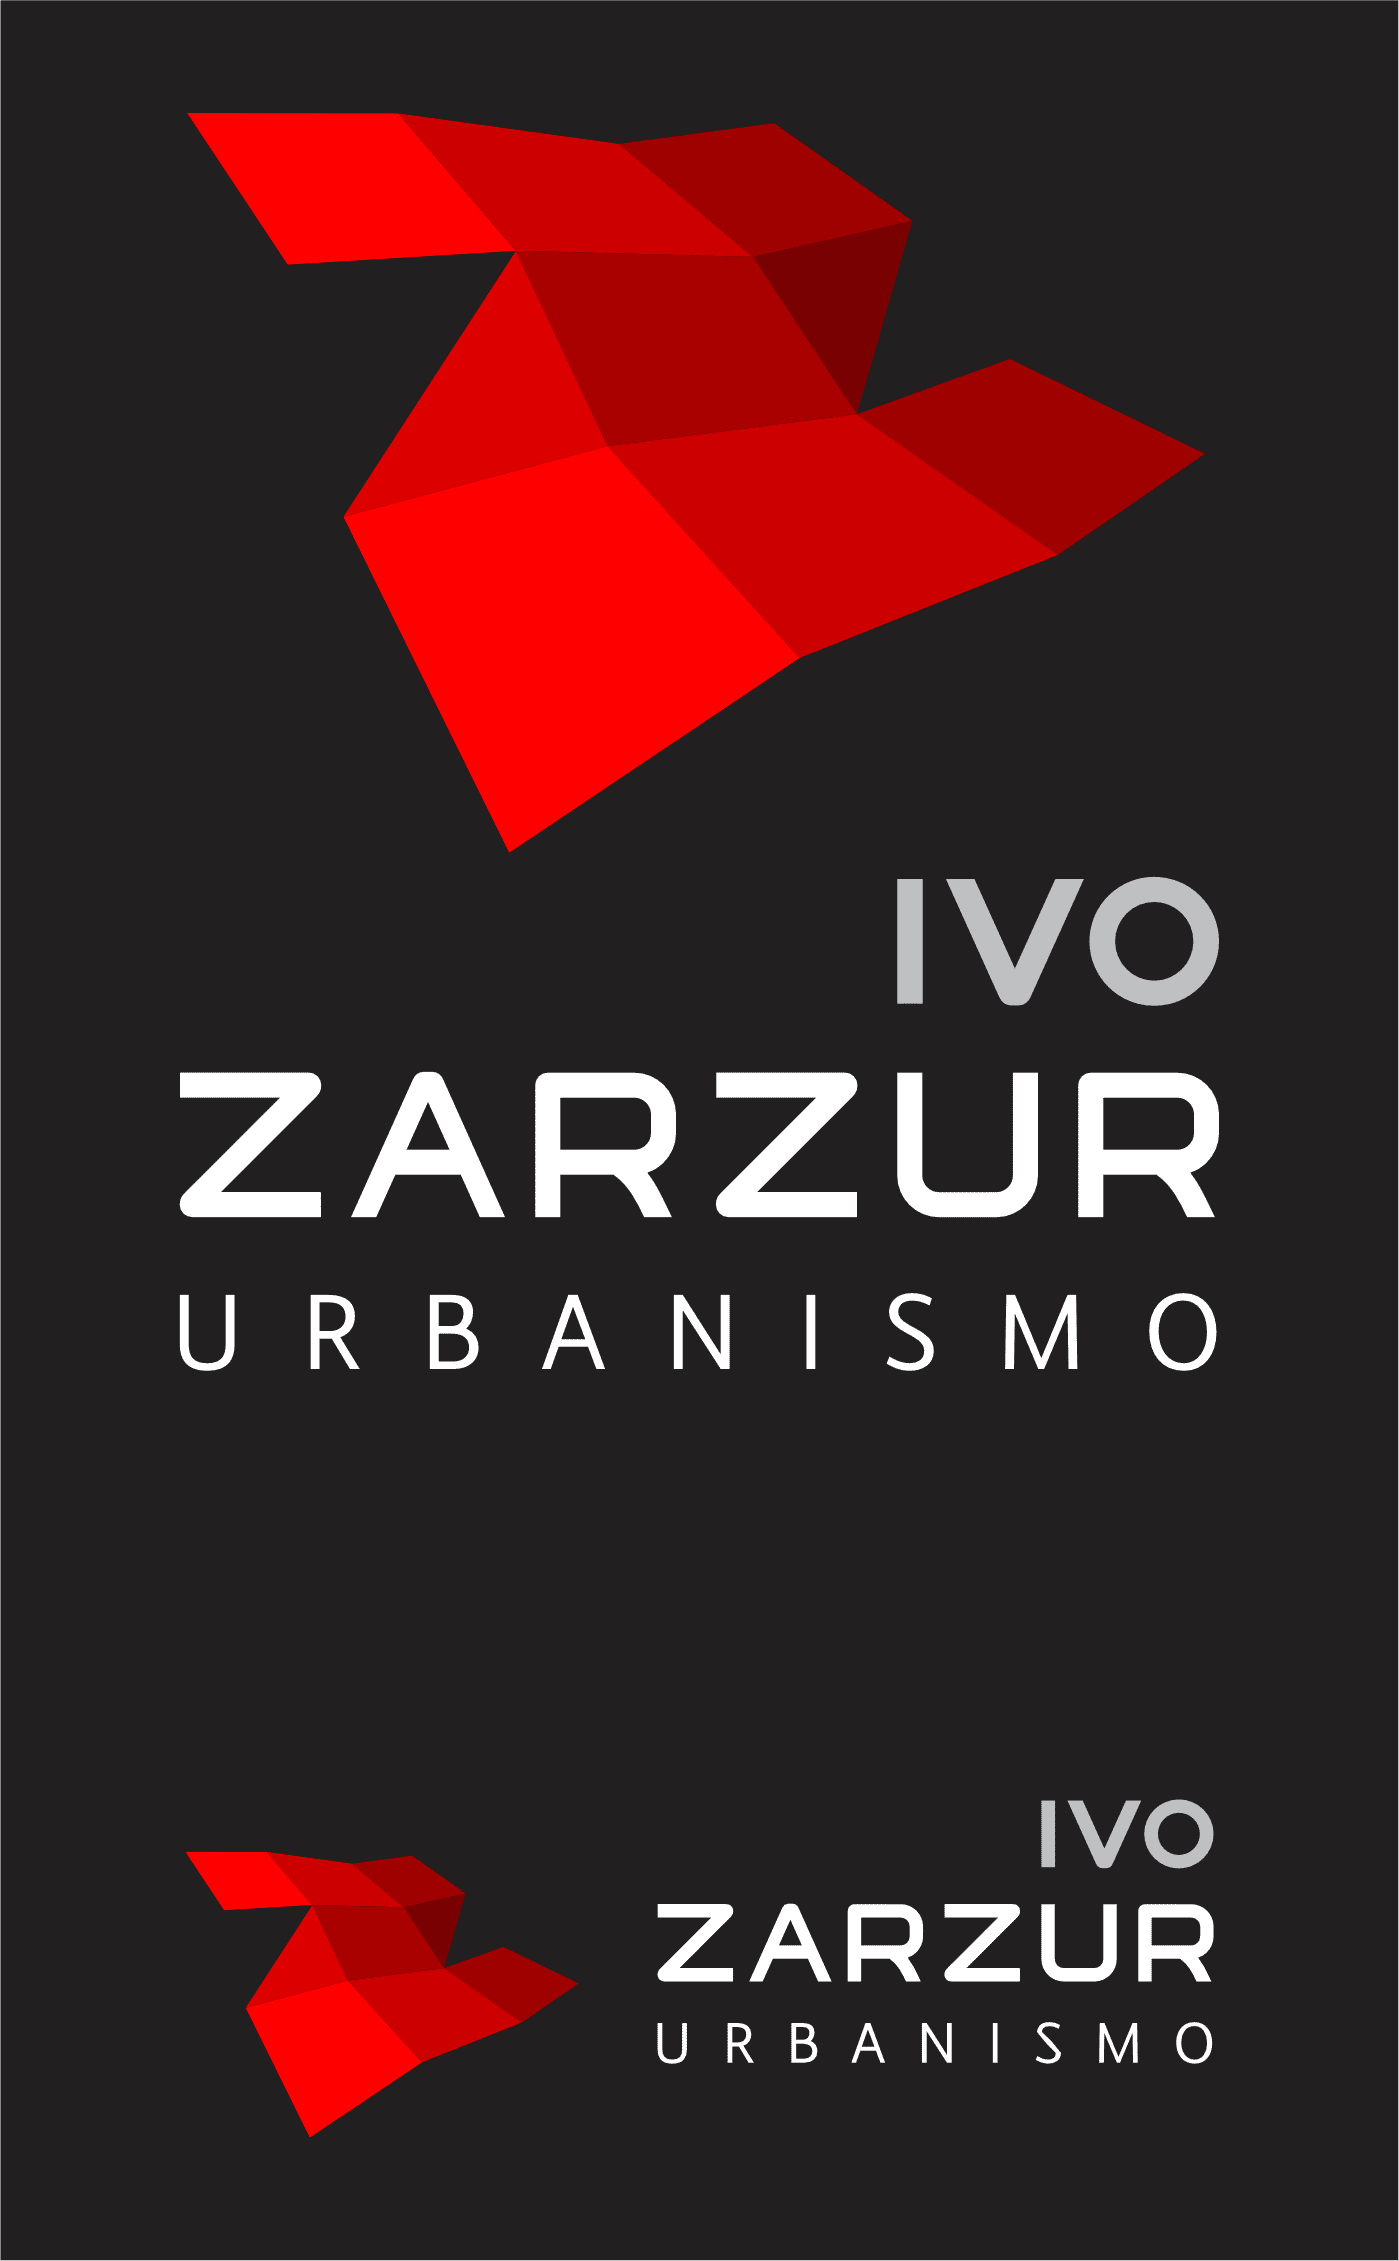 Marca Ivo Zarzur Urbanismo sobre fundo preto | Design de marca e Identidade Visual assinado pela Brandium